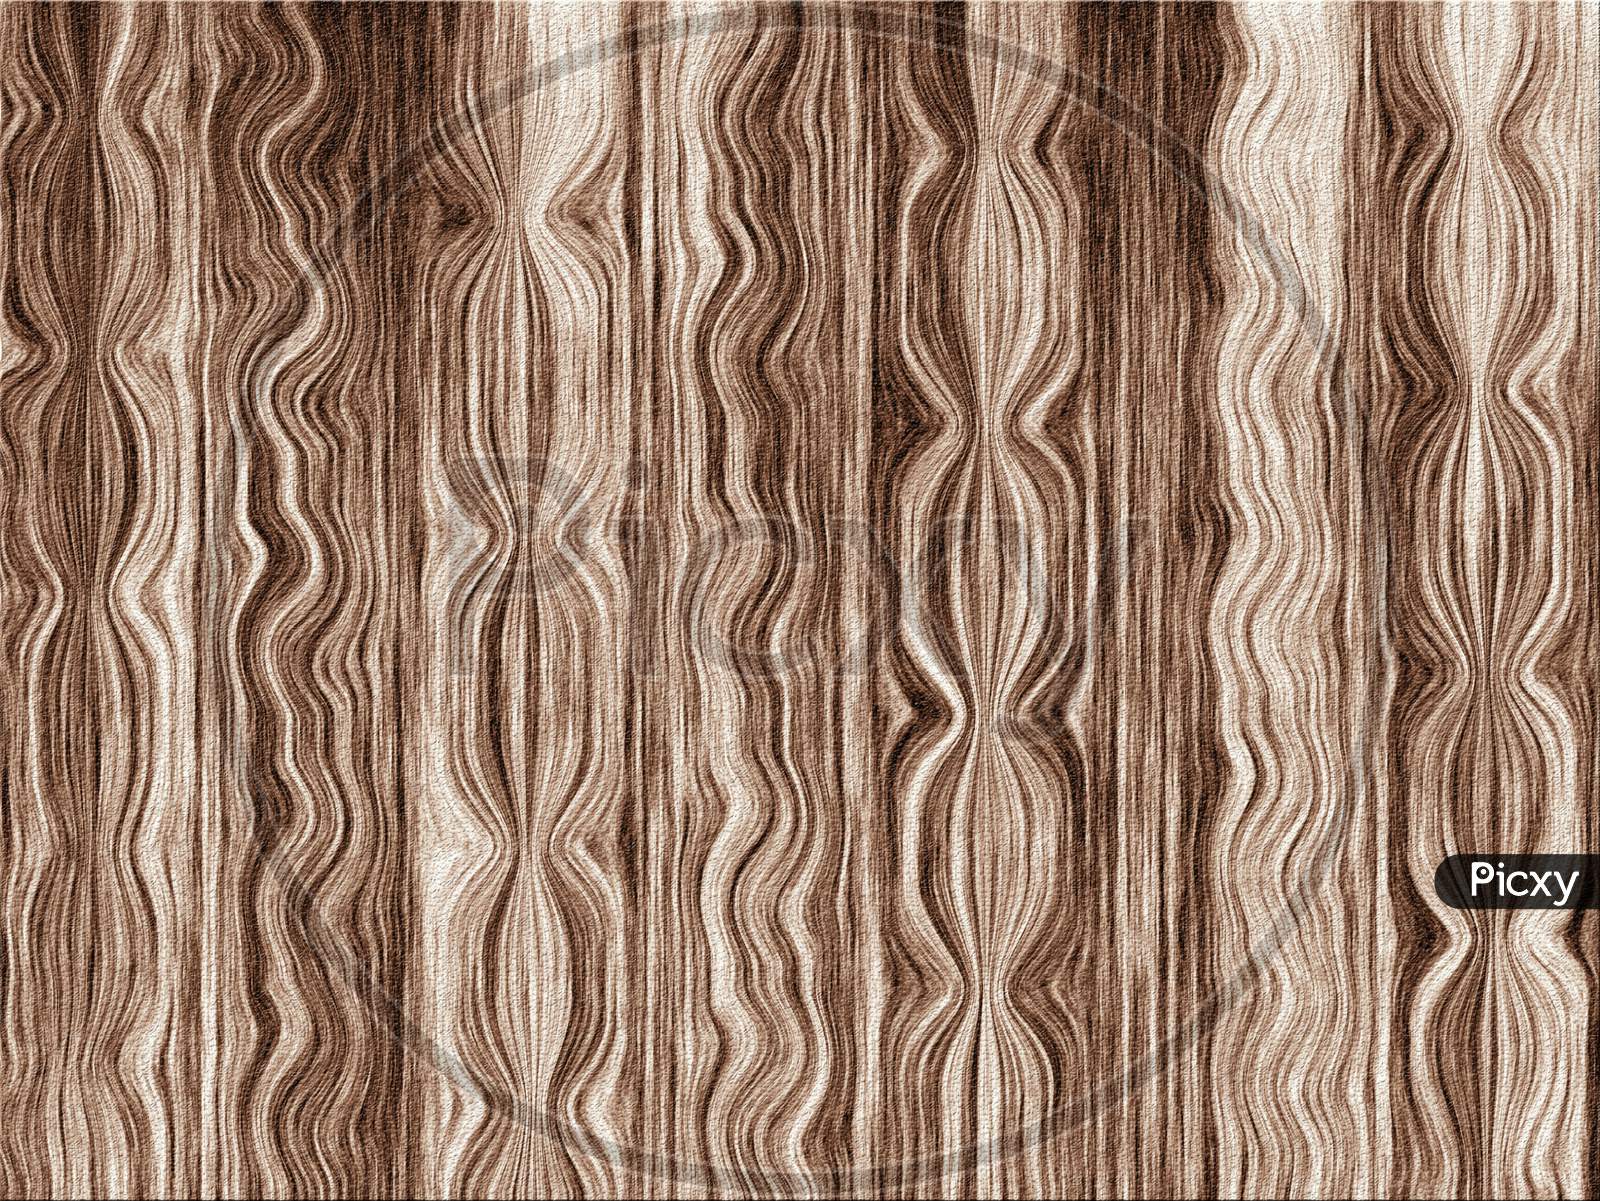 Dark wood texture background